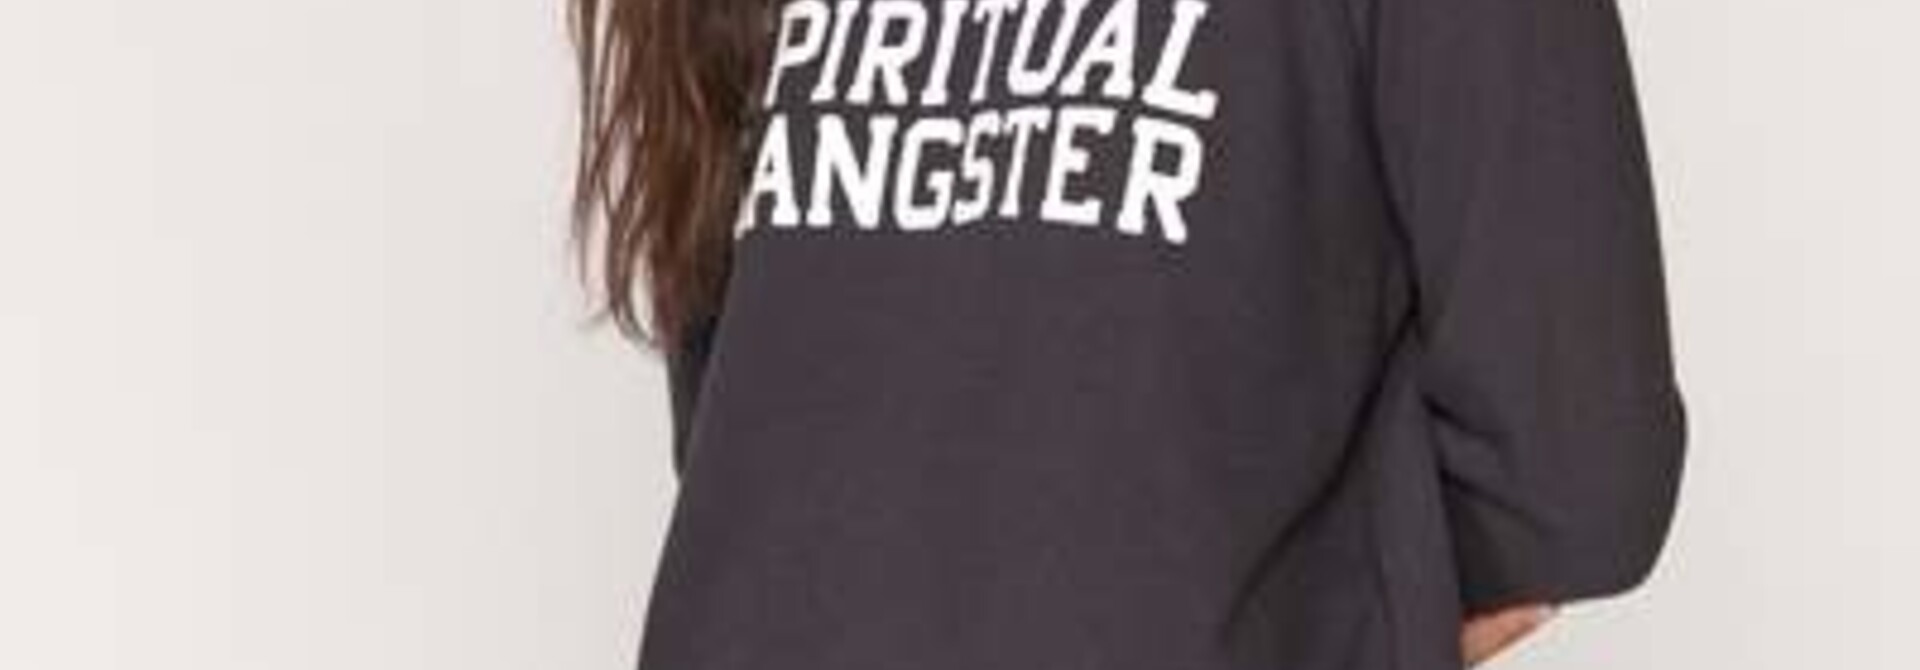 Spiritual Gangster Varsity Old School Sweatshirt - Vintage Black